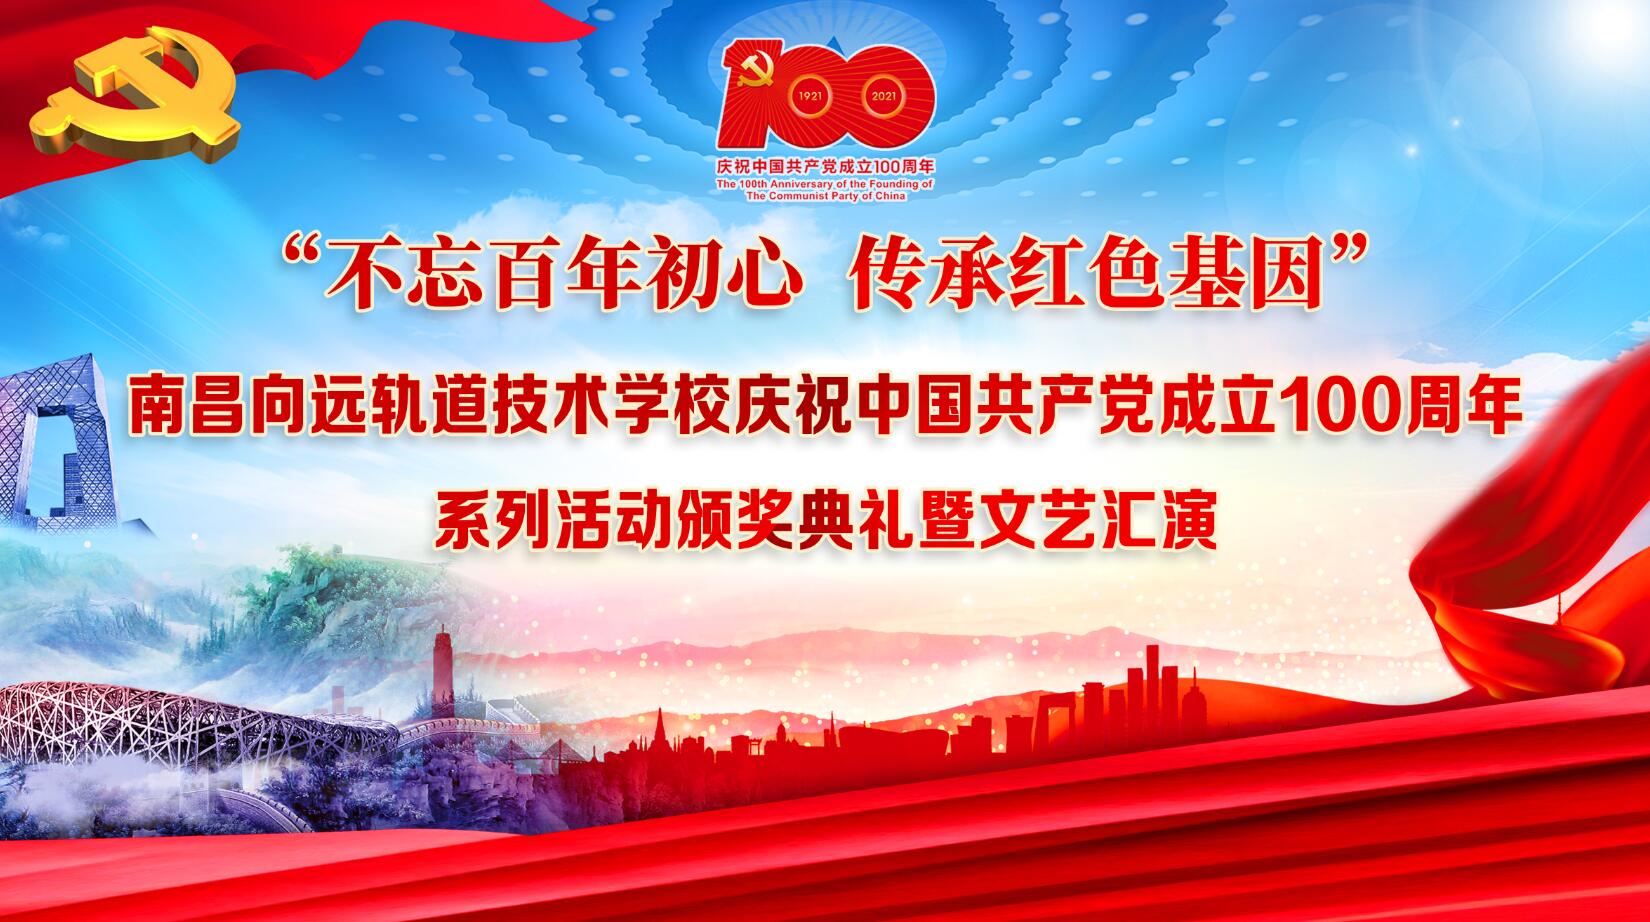 隆重举办 庆祝建党100周年文艺晚会暨“七一”表彰大会